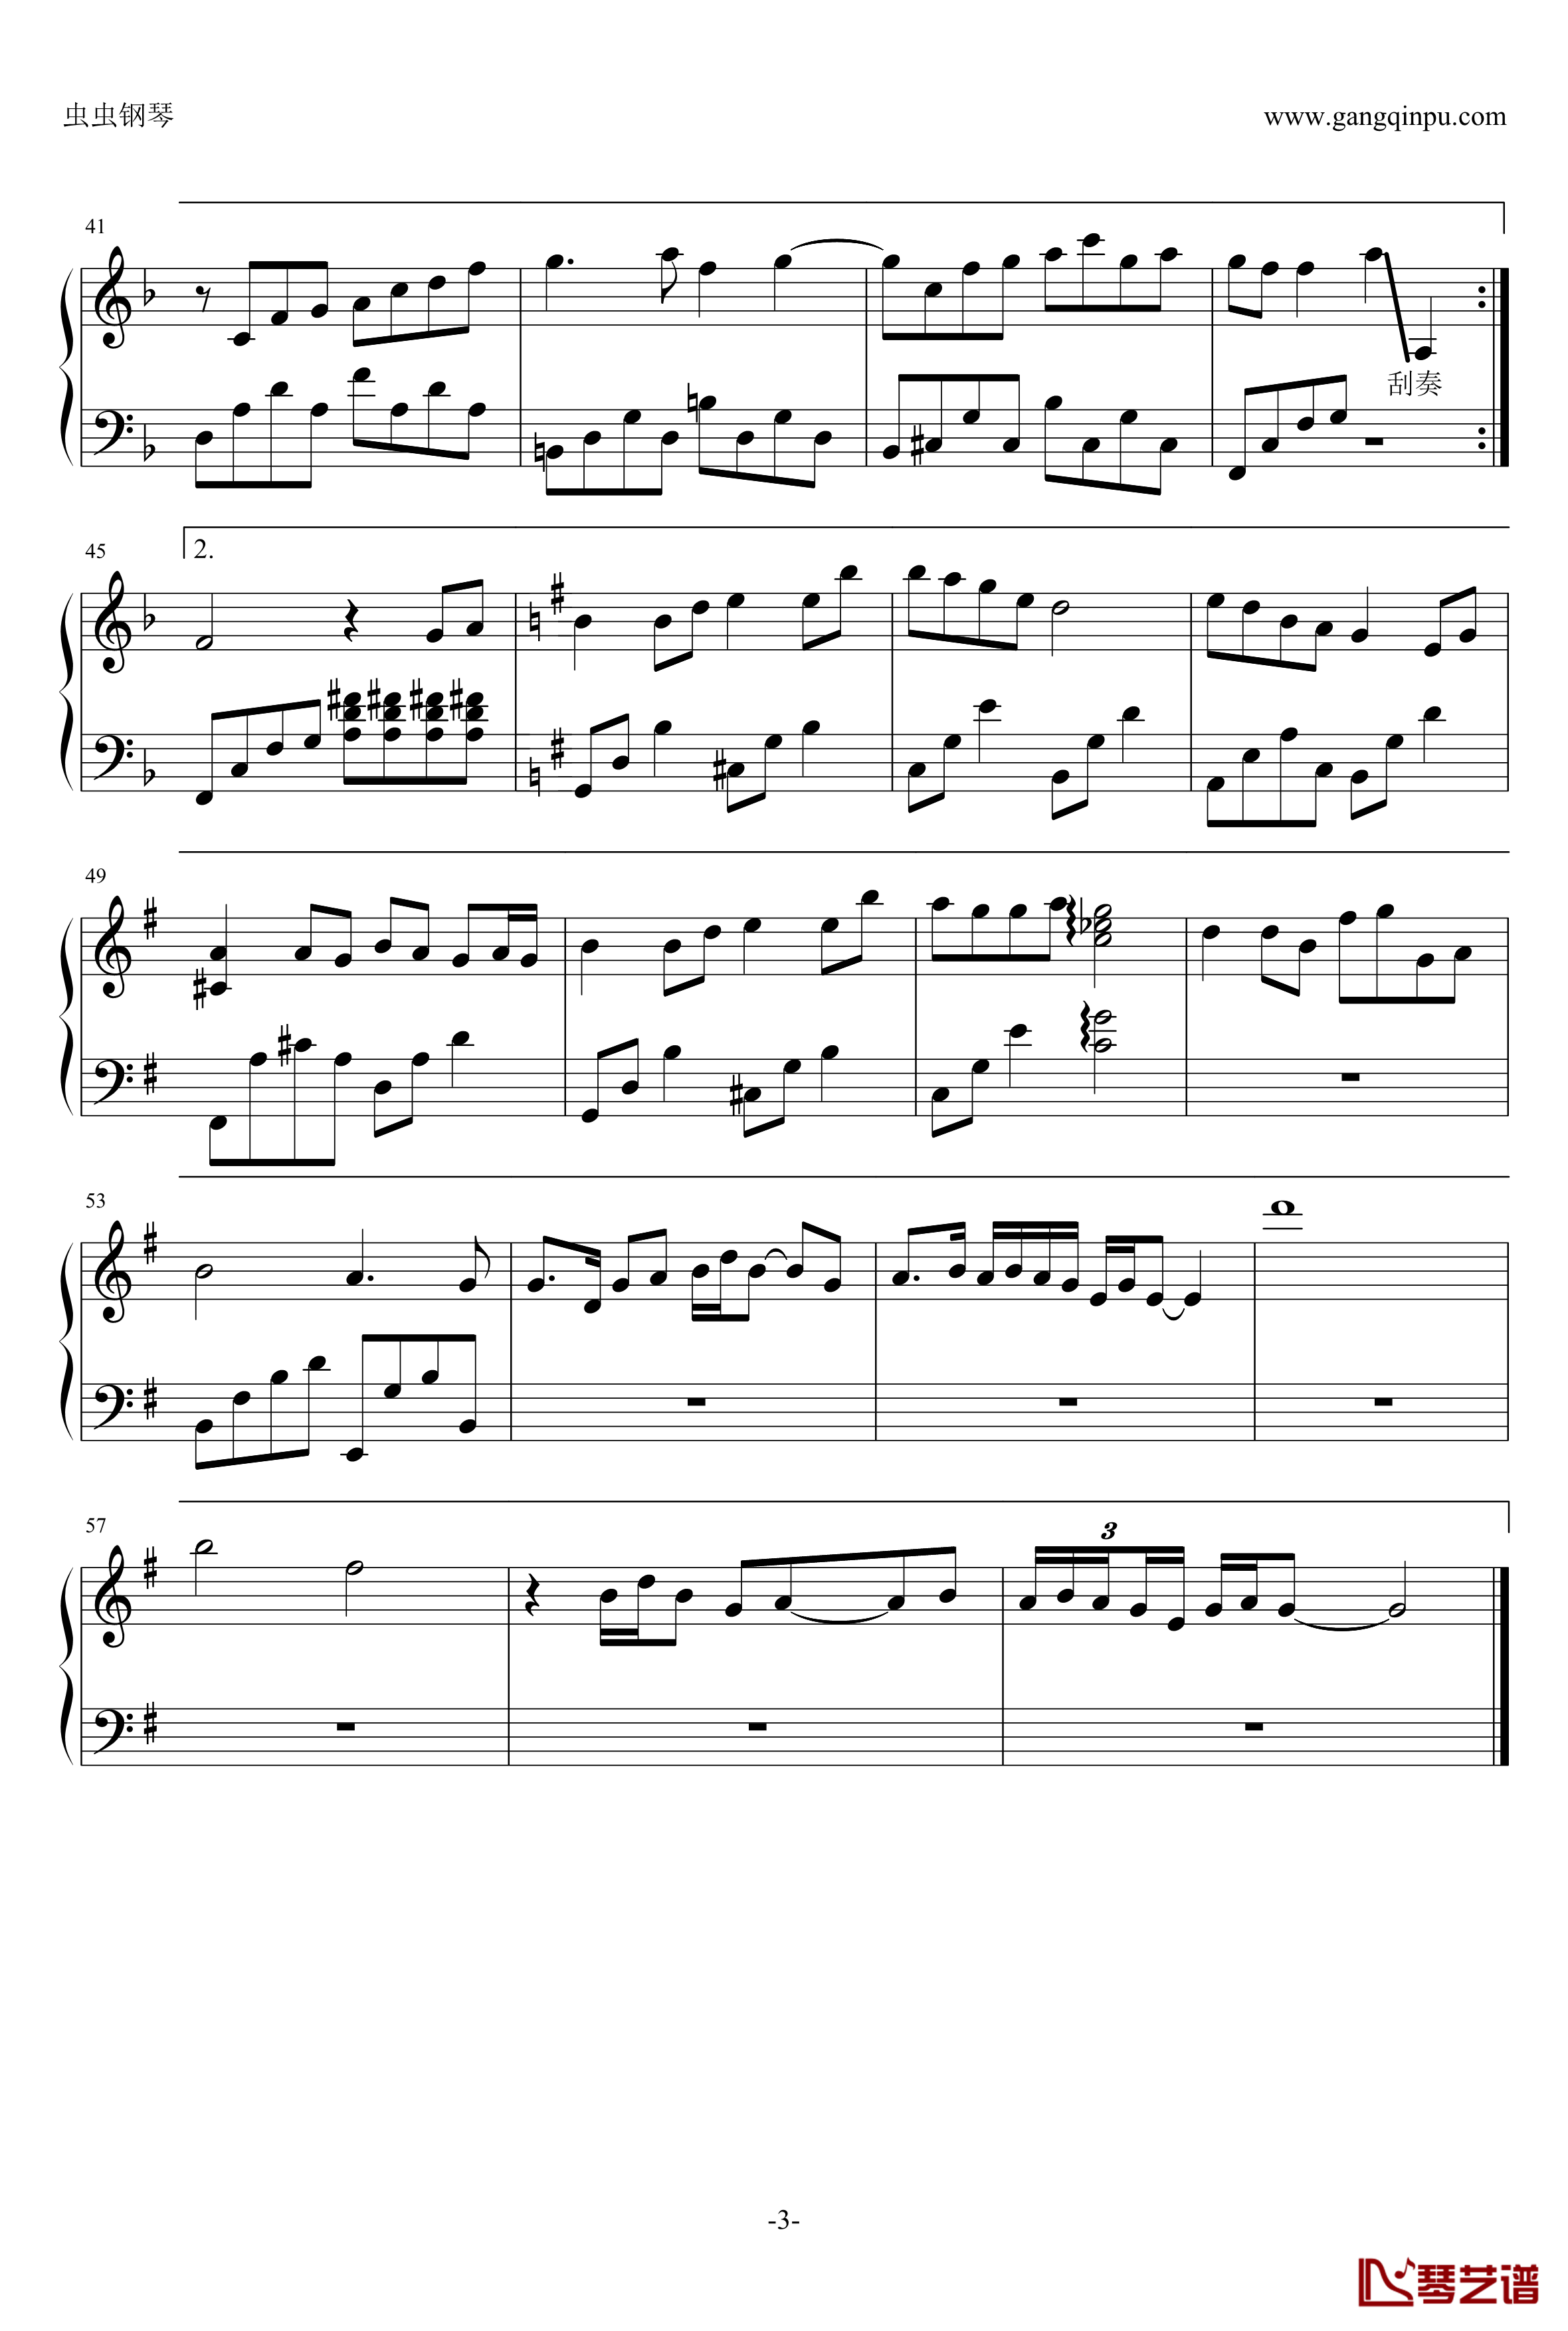 菊花台钢琴谱-金龙鱼钢琴简化独奏170206-周杰伦3